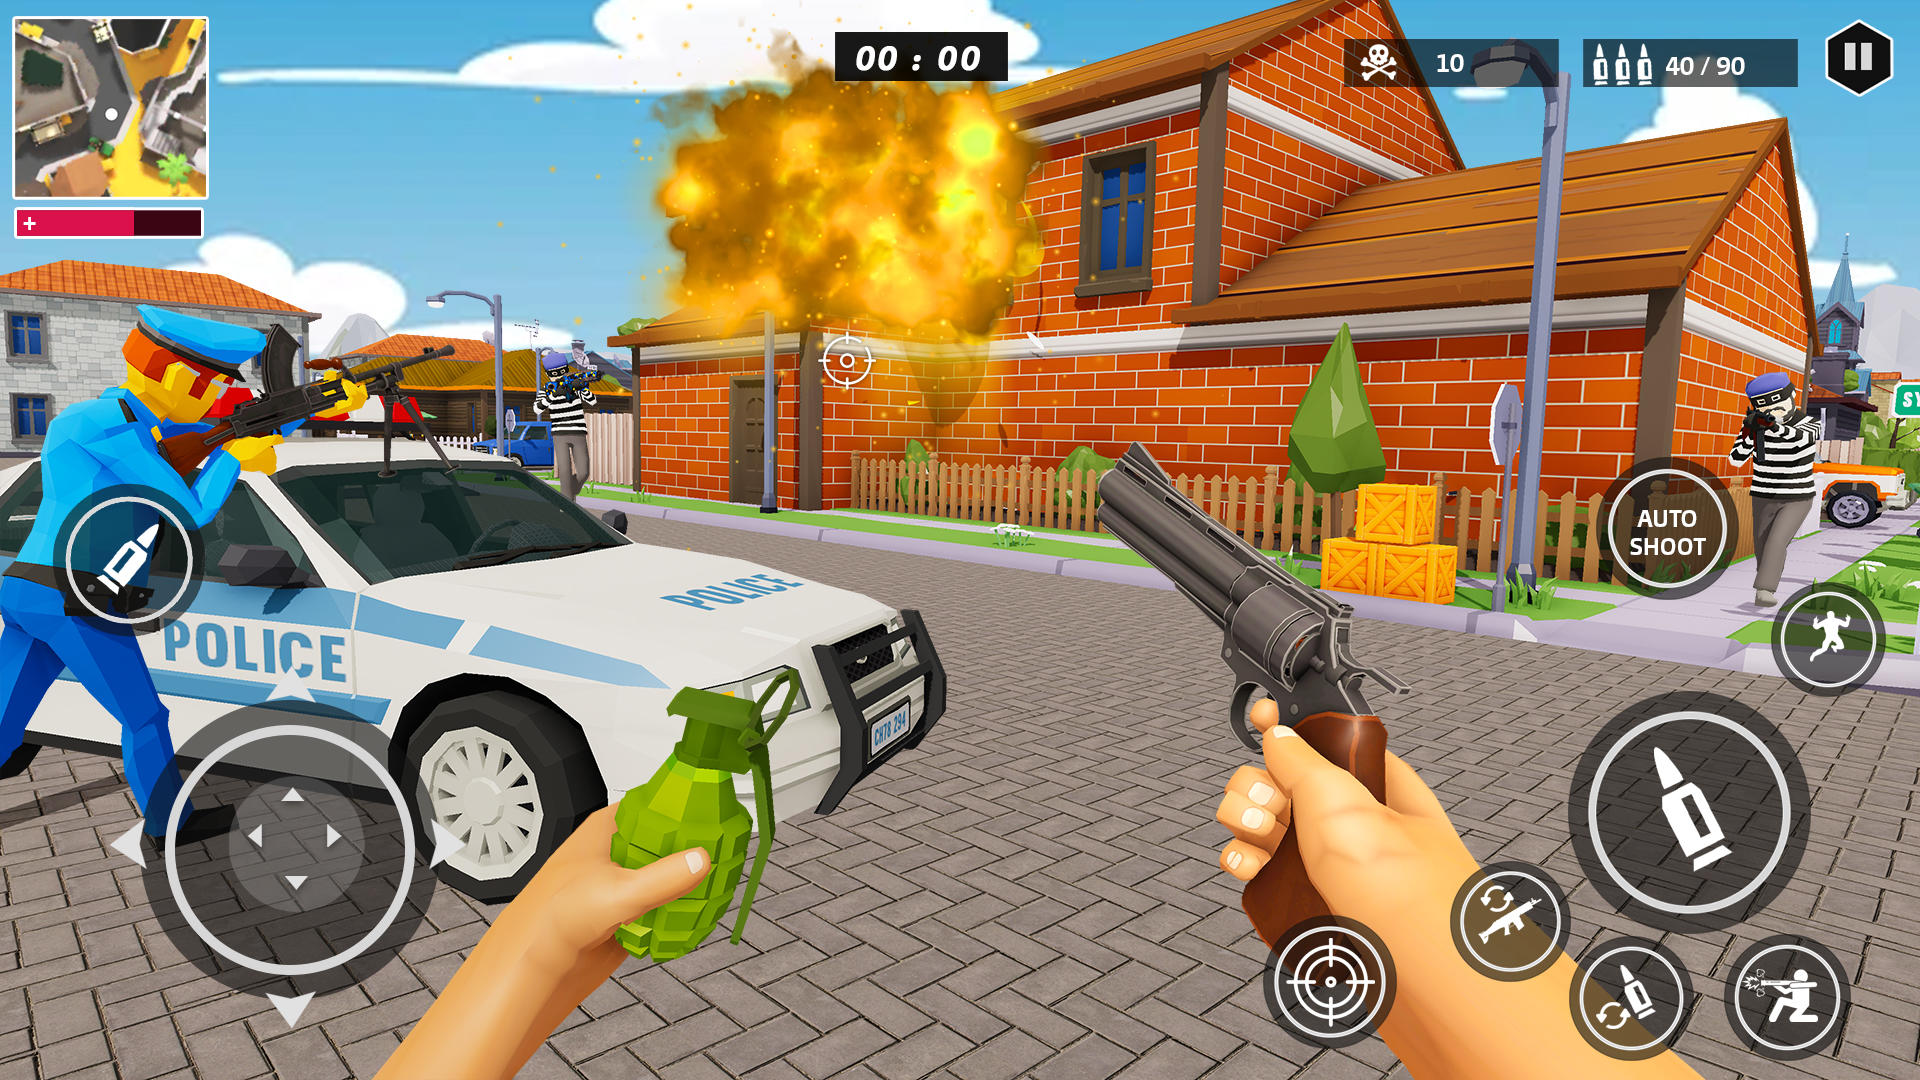 Screenshot 1 of Trò chơi cảnh sát FPS: Trận chiến tội phạm 1.0.4